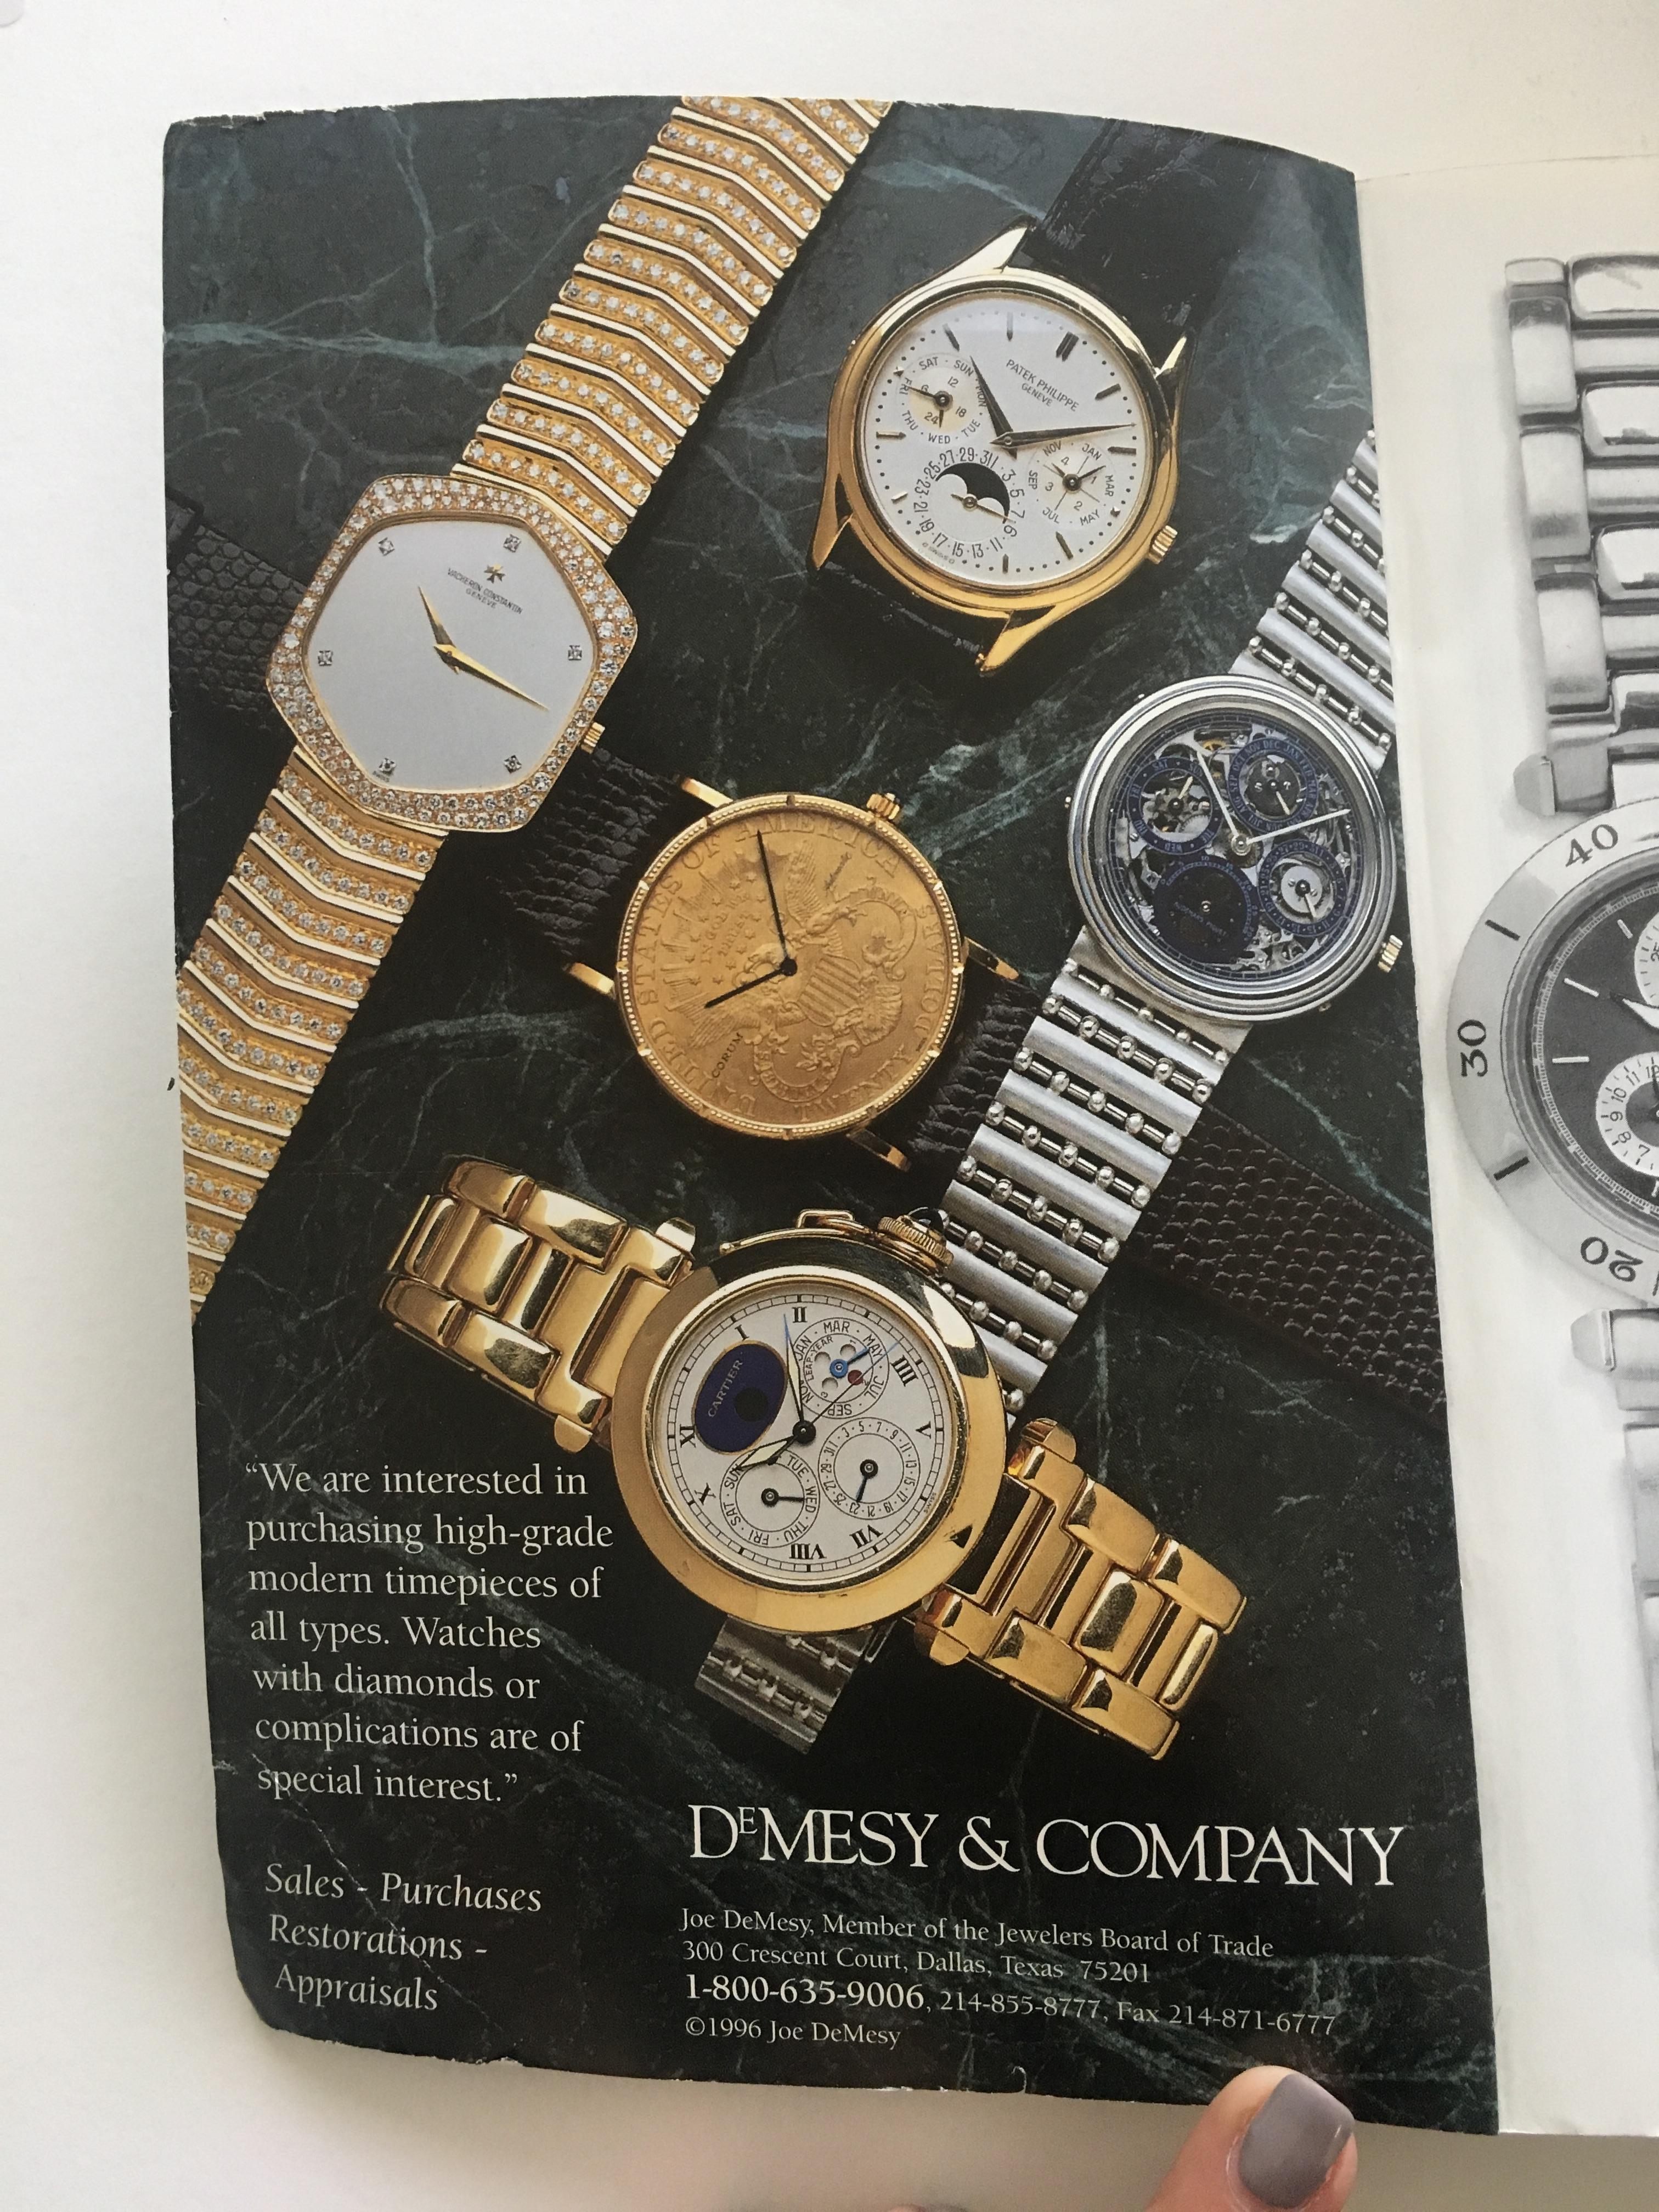 VOLUME 7 : Vintage American & European Silver Anniversary Wristwatch Price Guide Publié en 1996